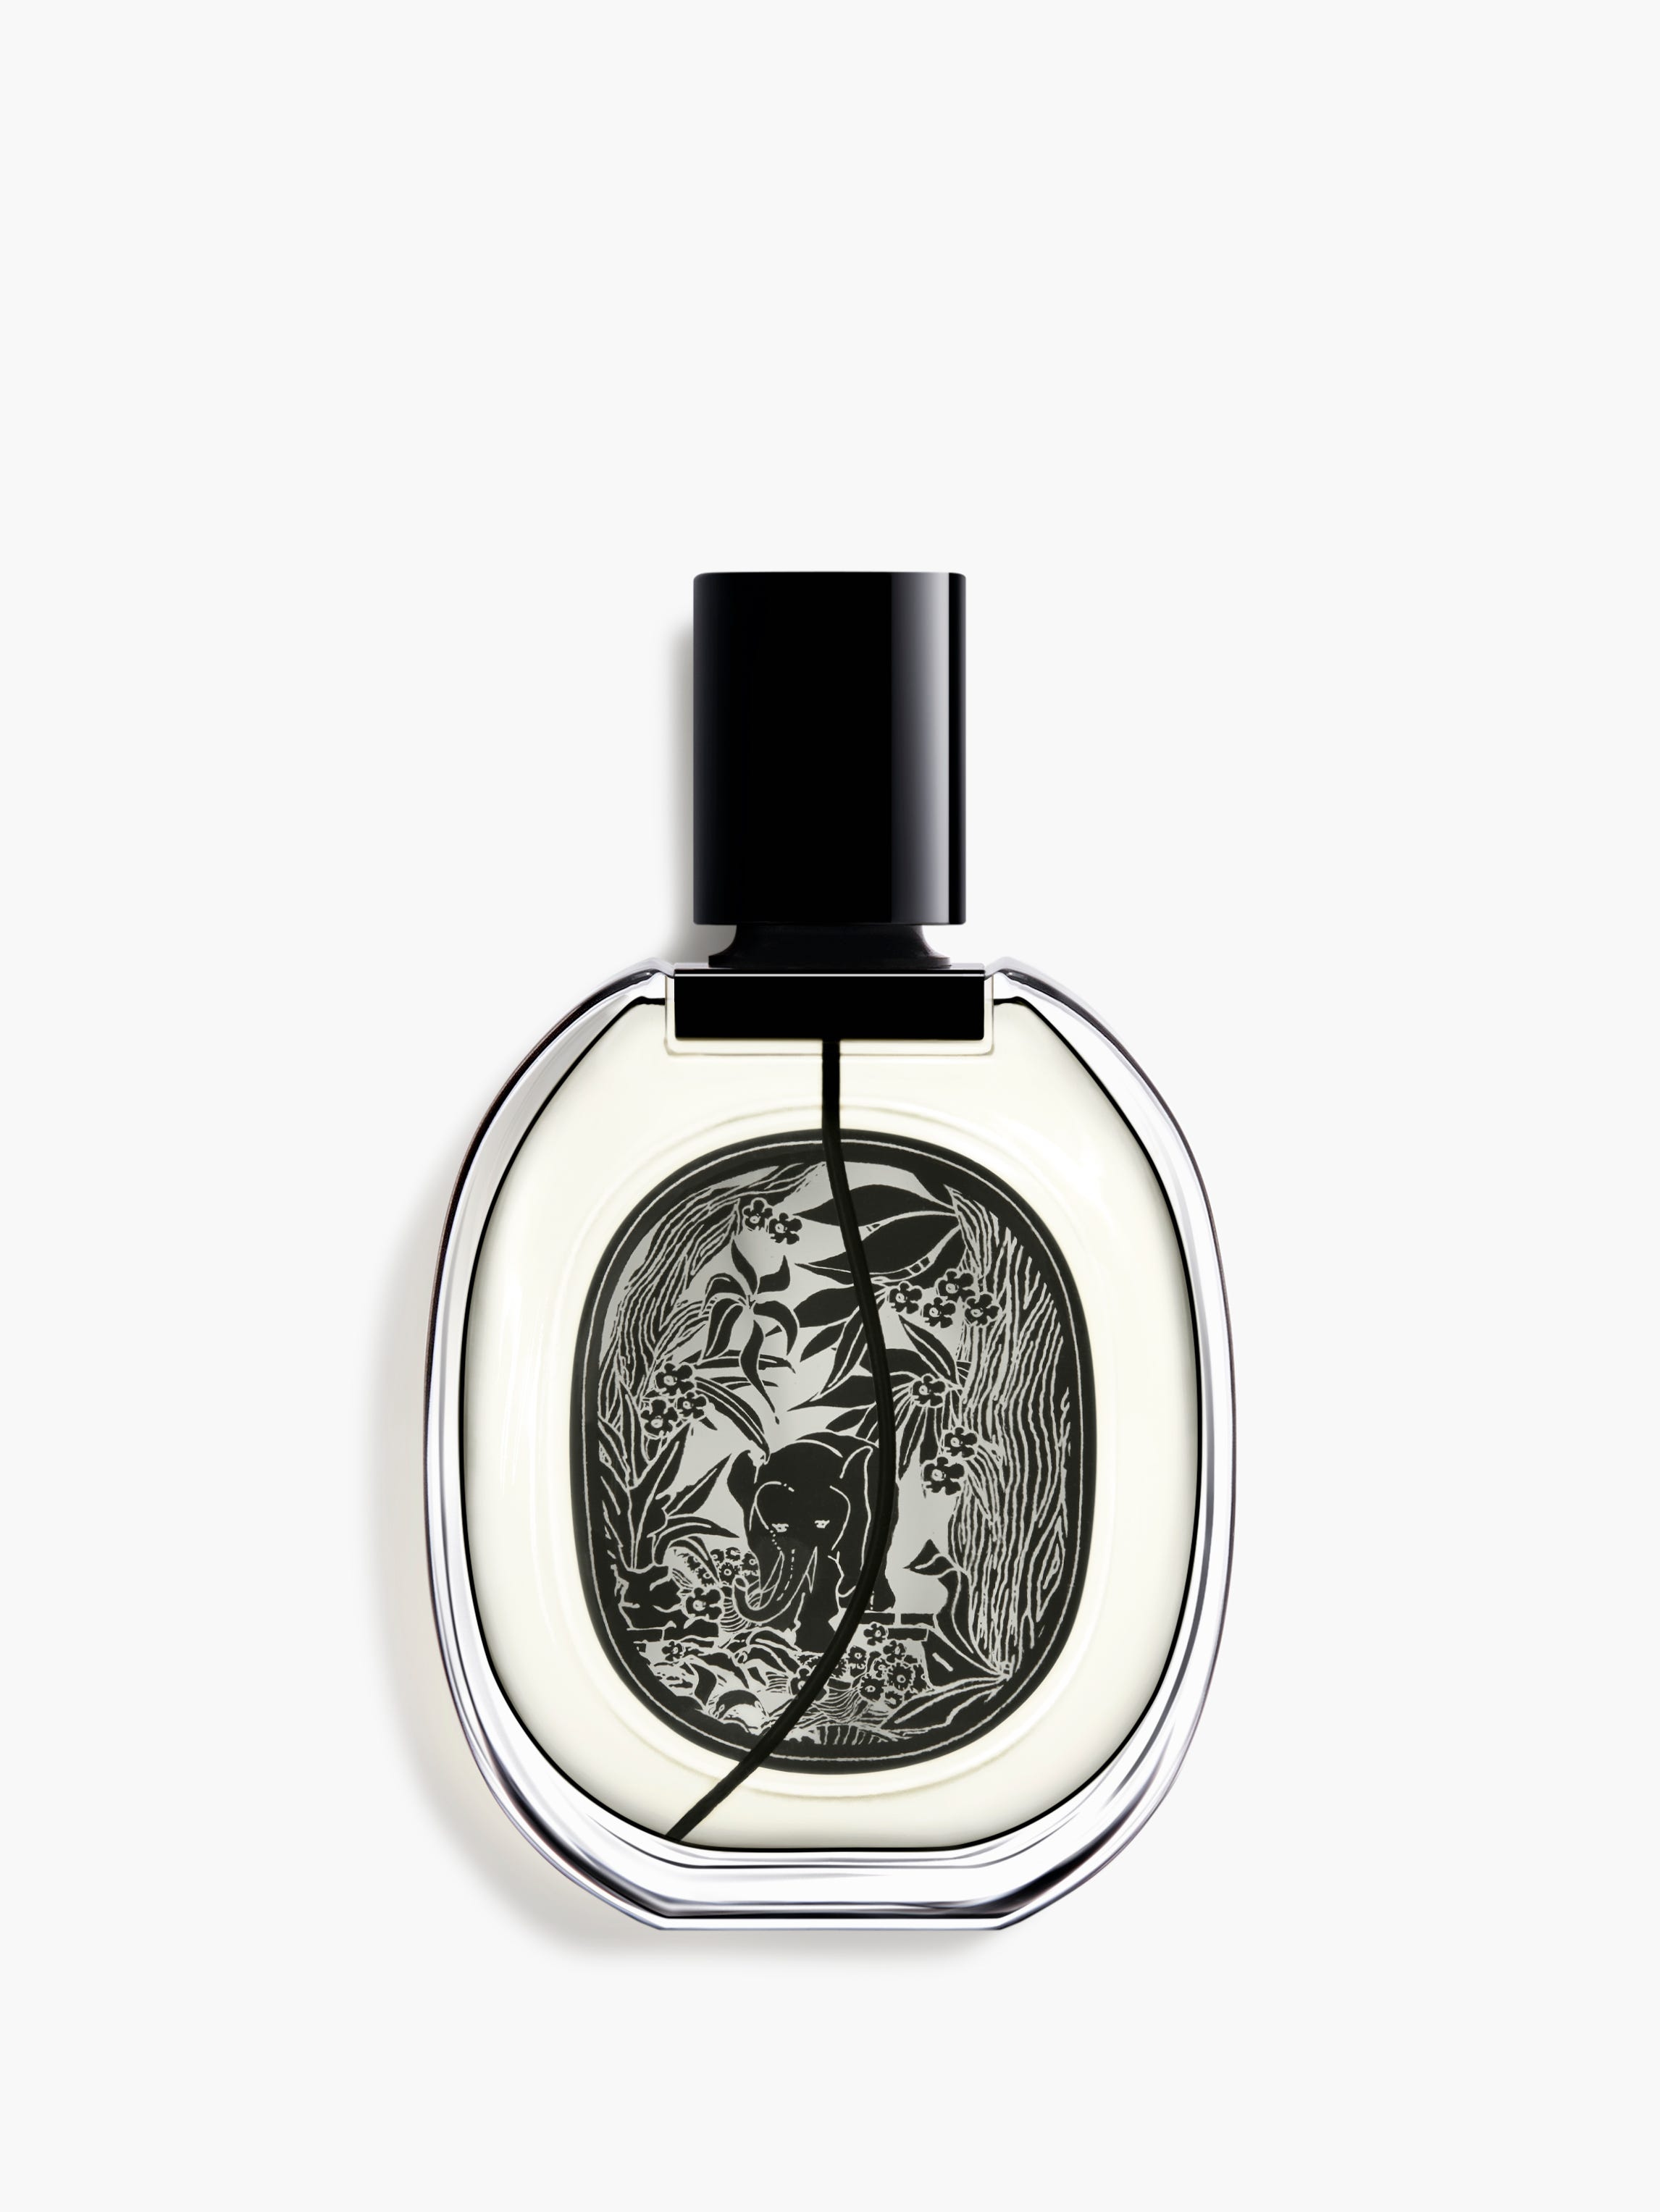 Personal Fragrances | diptyque Paris Official